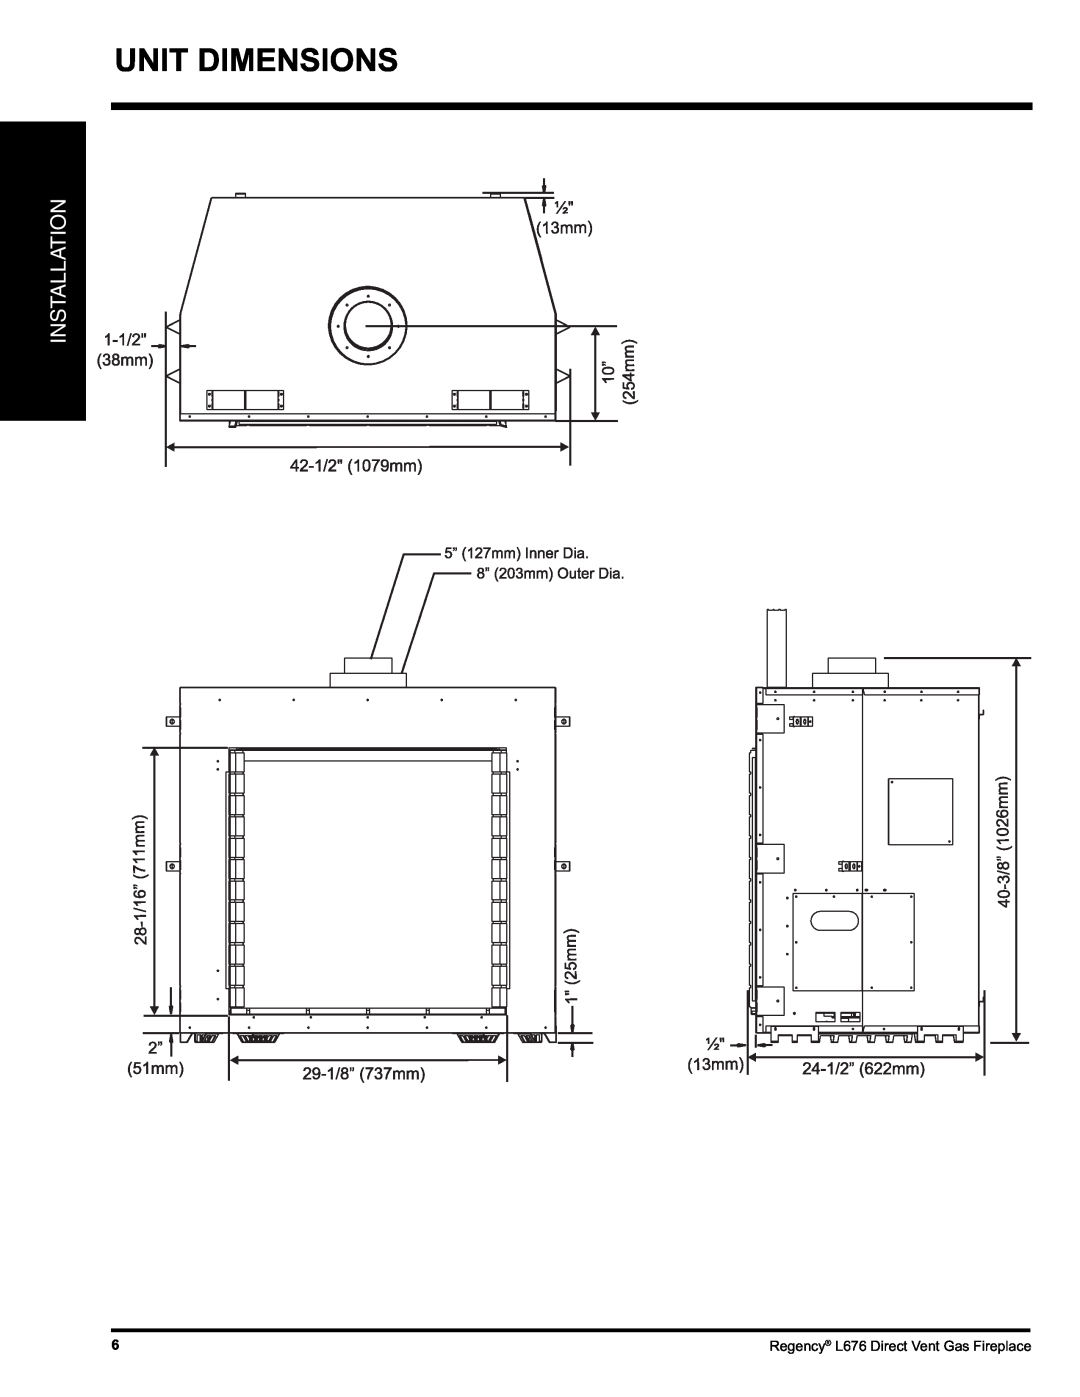 Regency L676 installation manual Unit Dimensions, Installation 